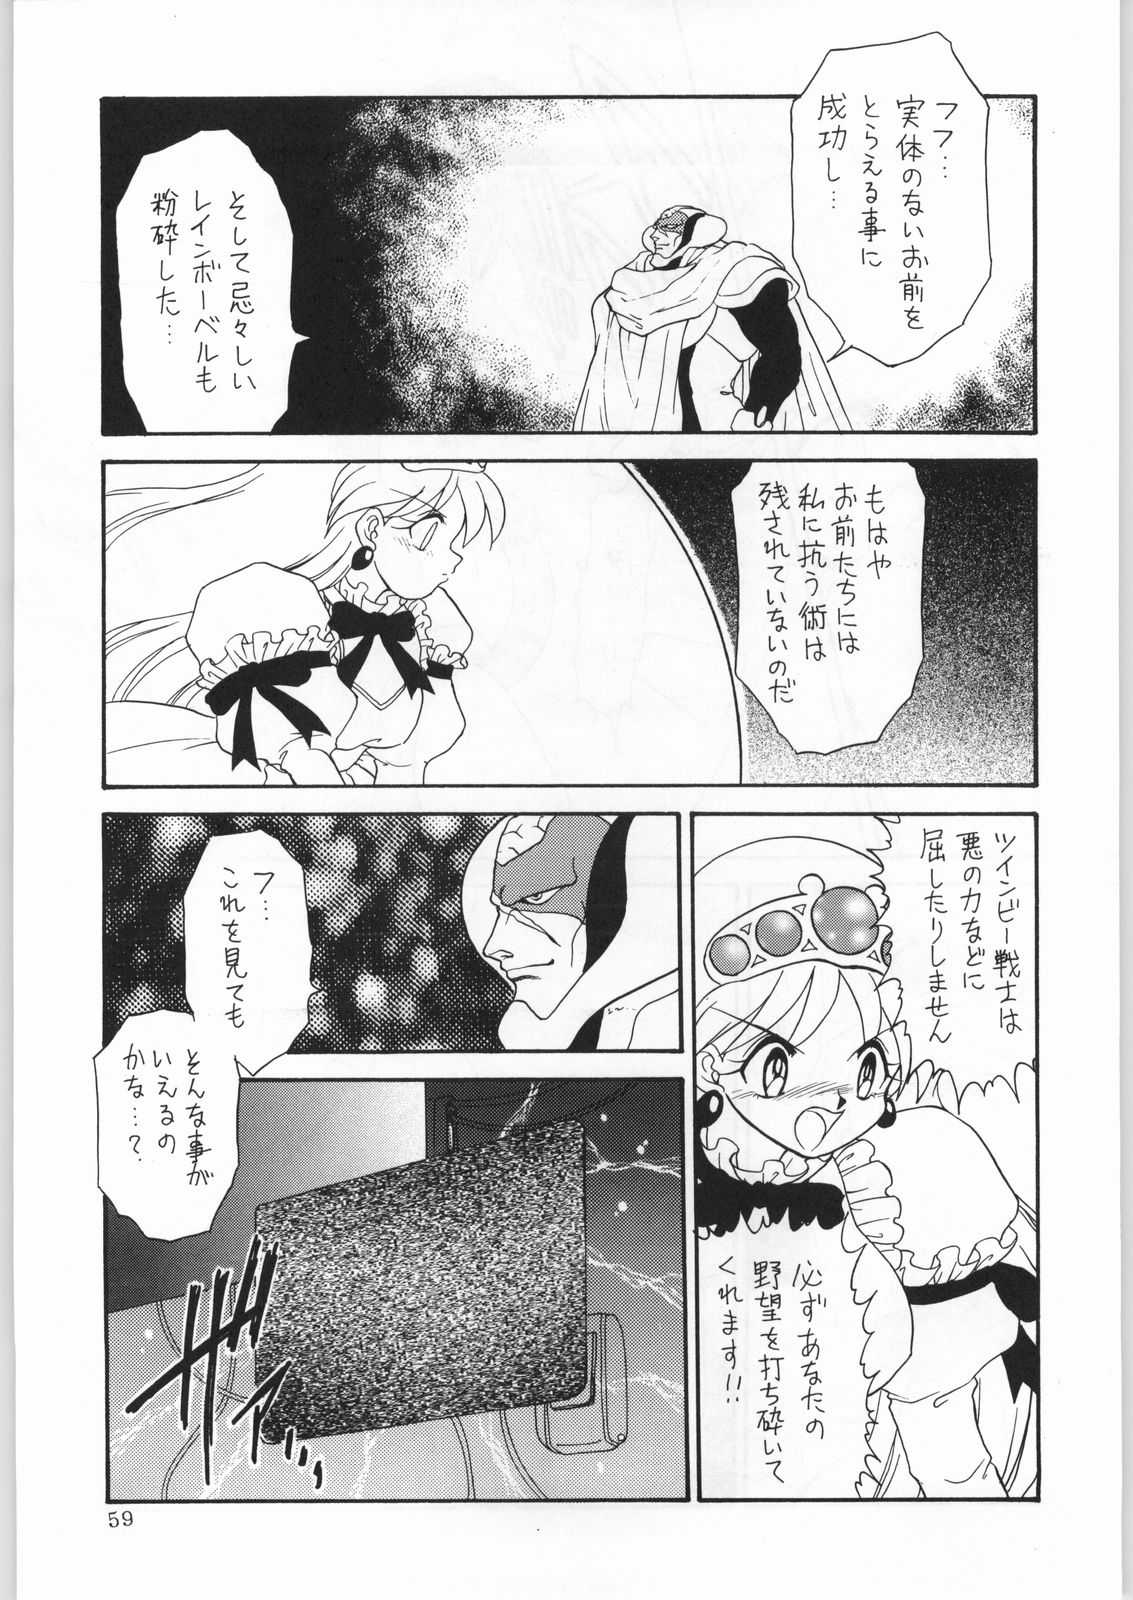 [Various] Dance of Princess 7 (Katari Heya) [かたりべや] DANCE OF PRINCESS 7